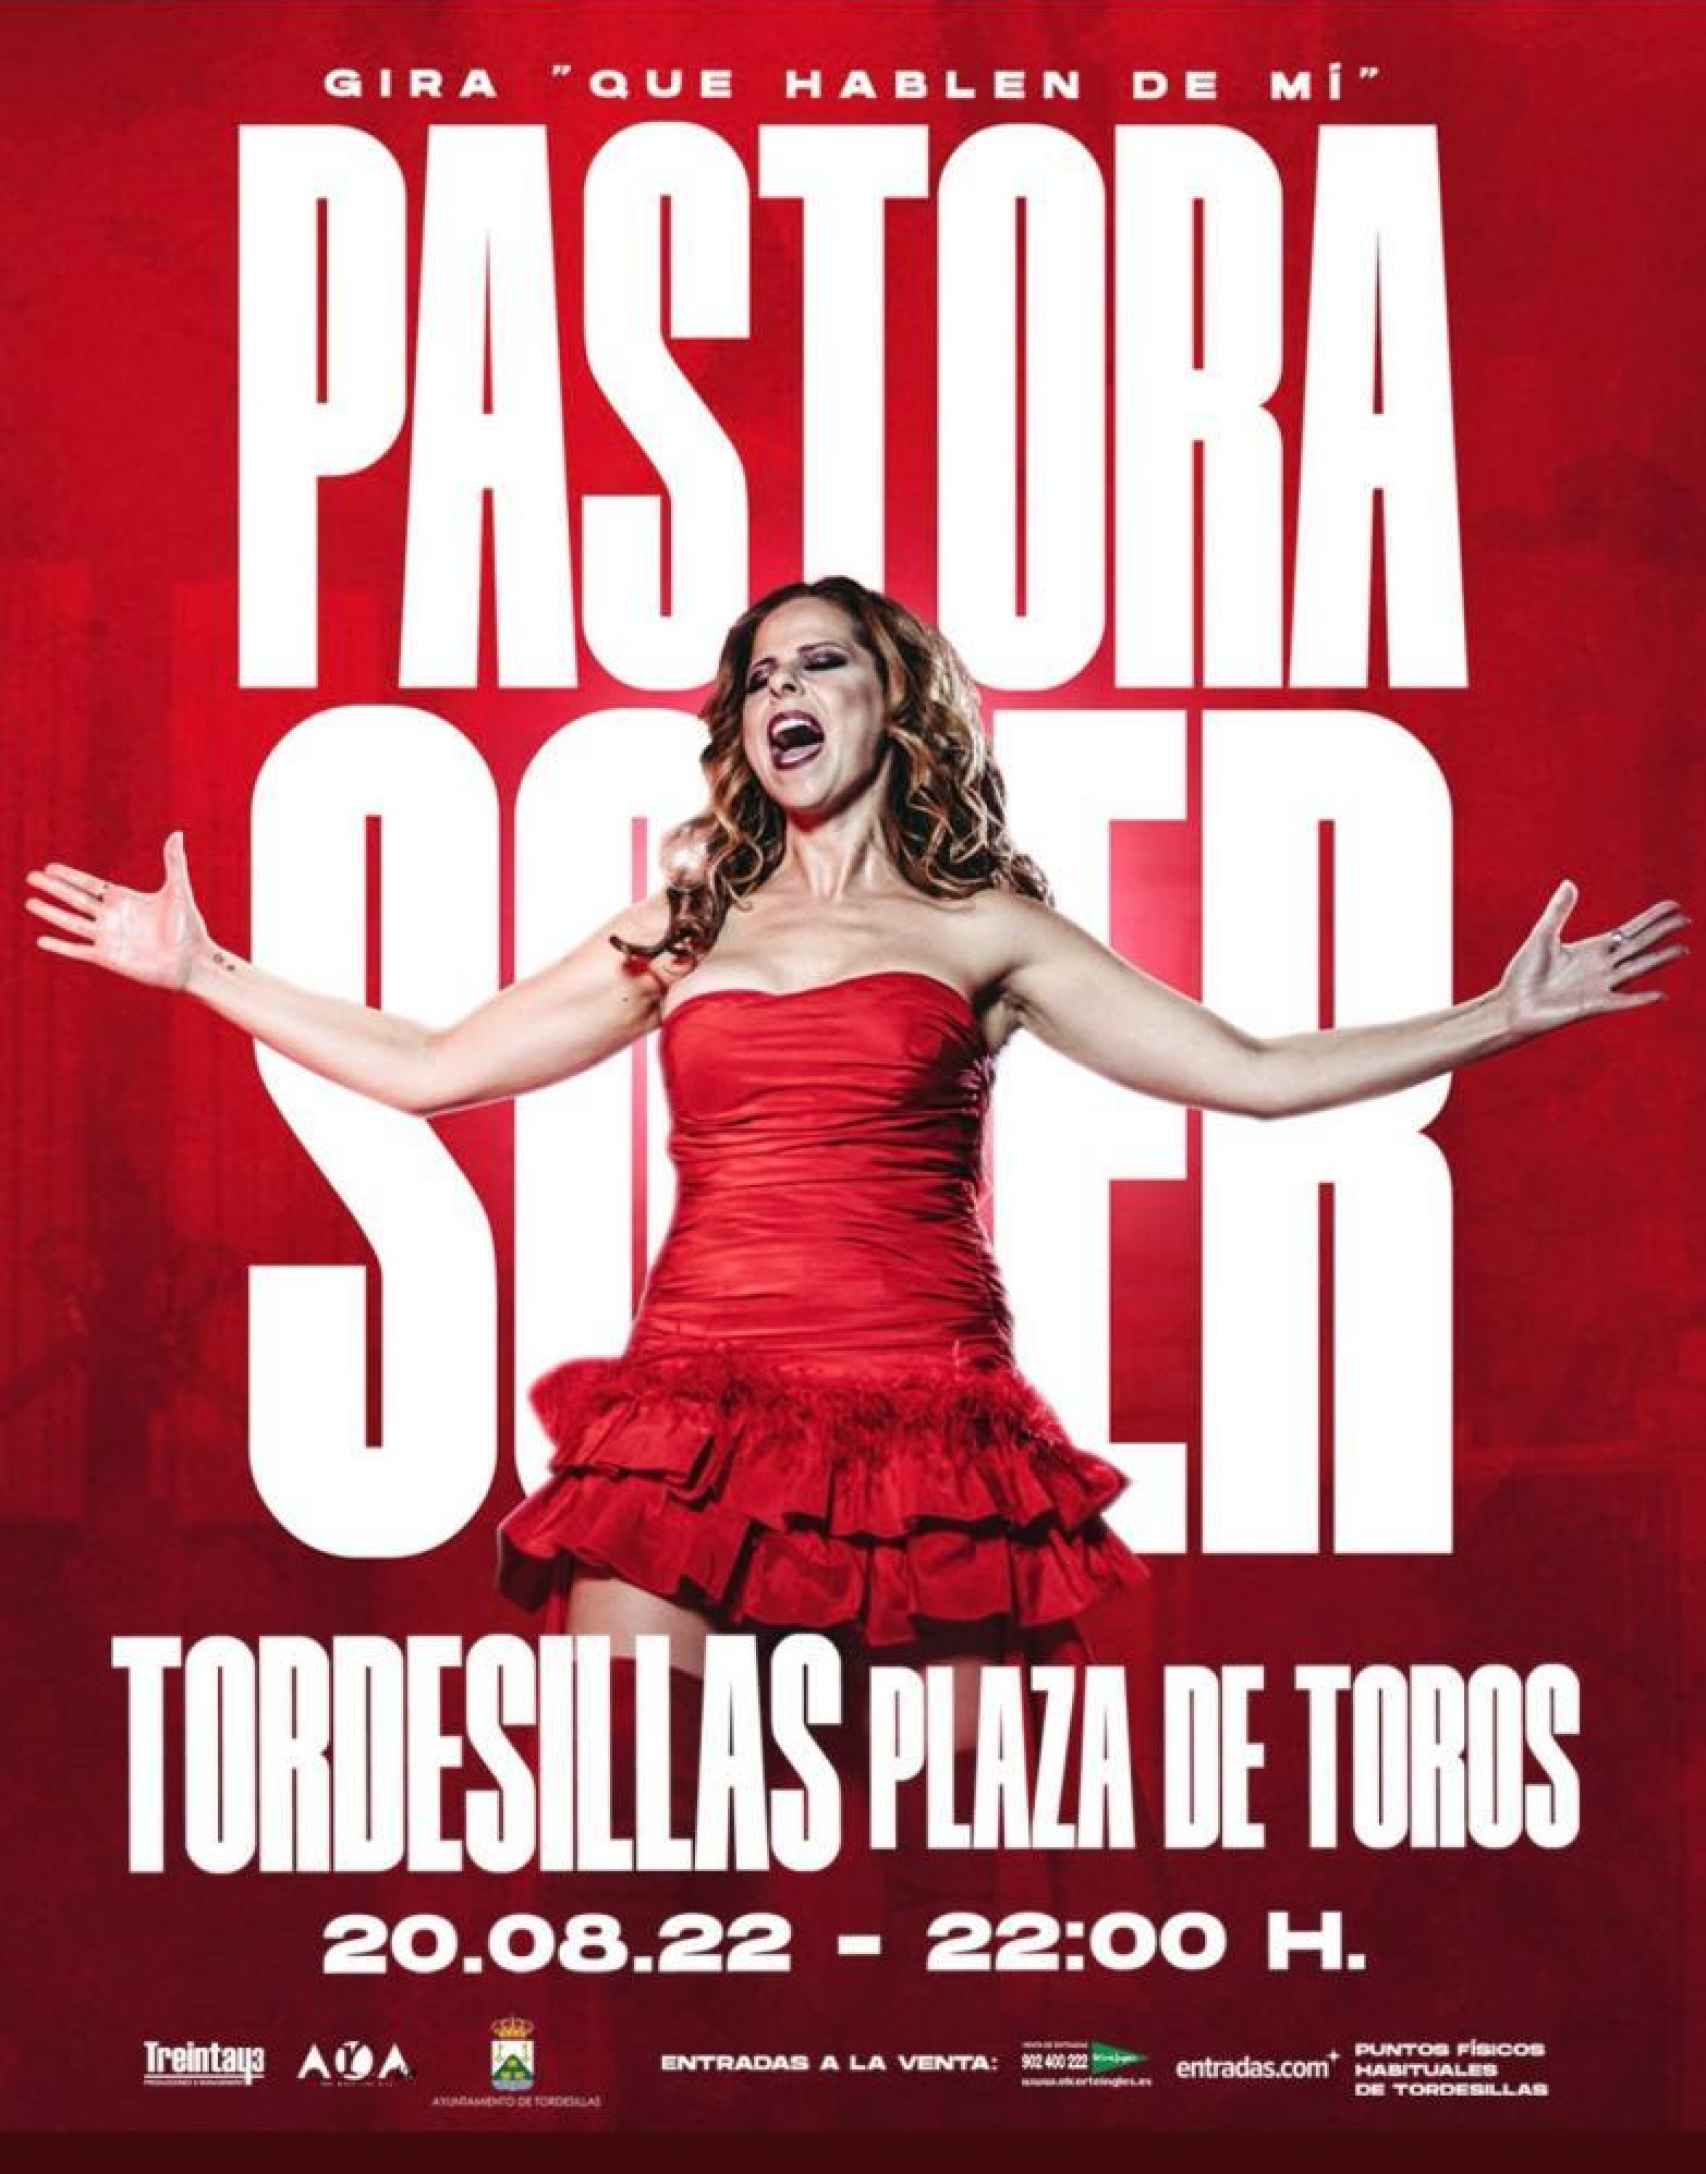 Pastora Soler concierto agosto Tordesillas